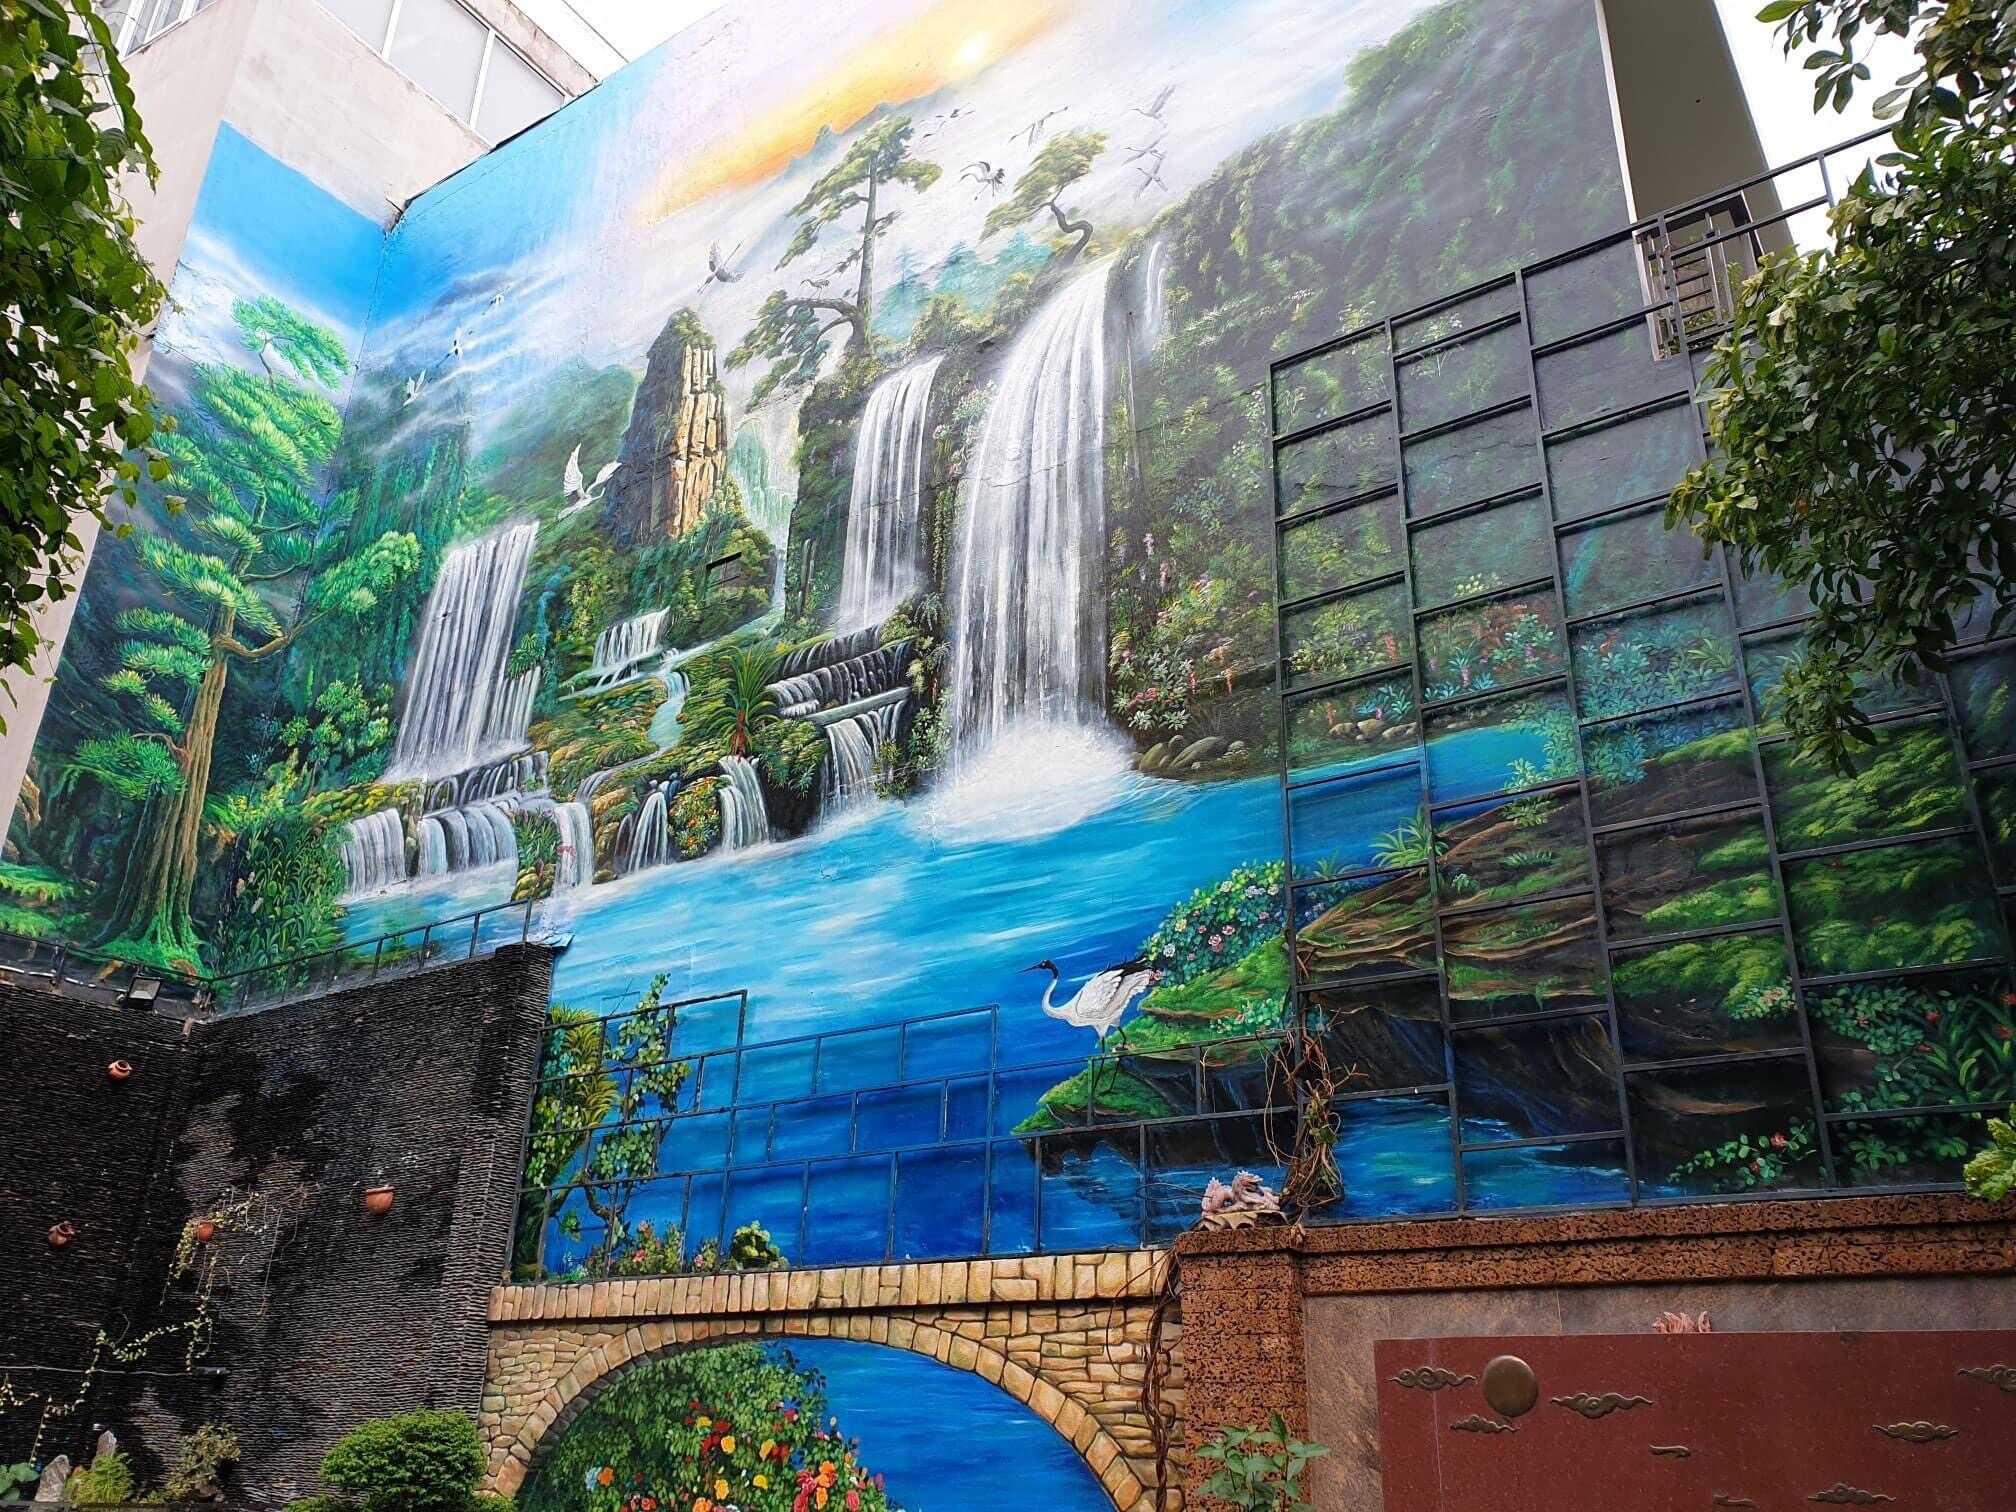 Vẽ tranh tường 3D giá rẻ tại Hồ Chí Minh